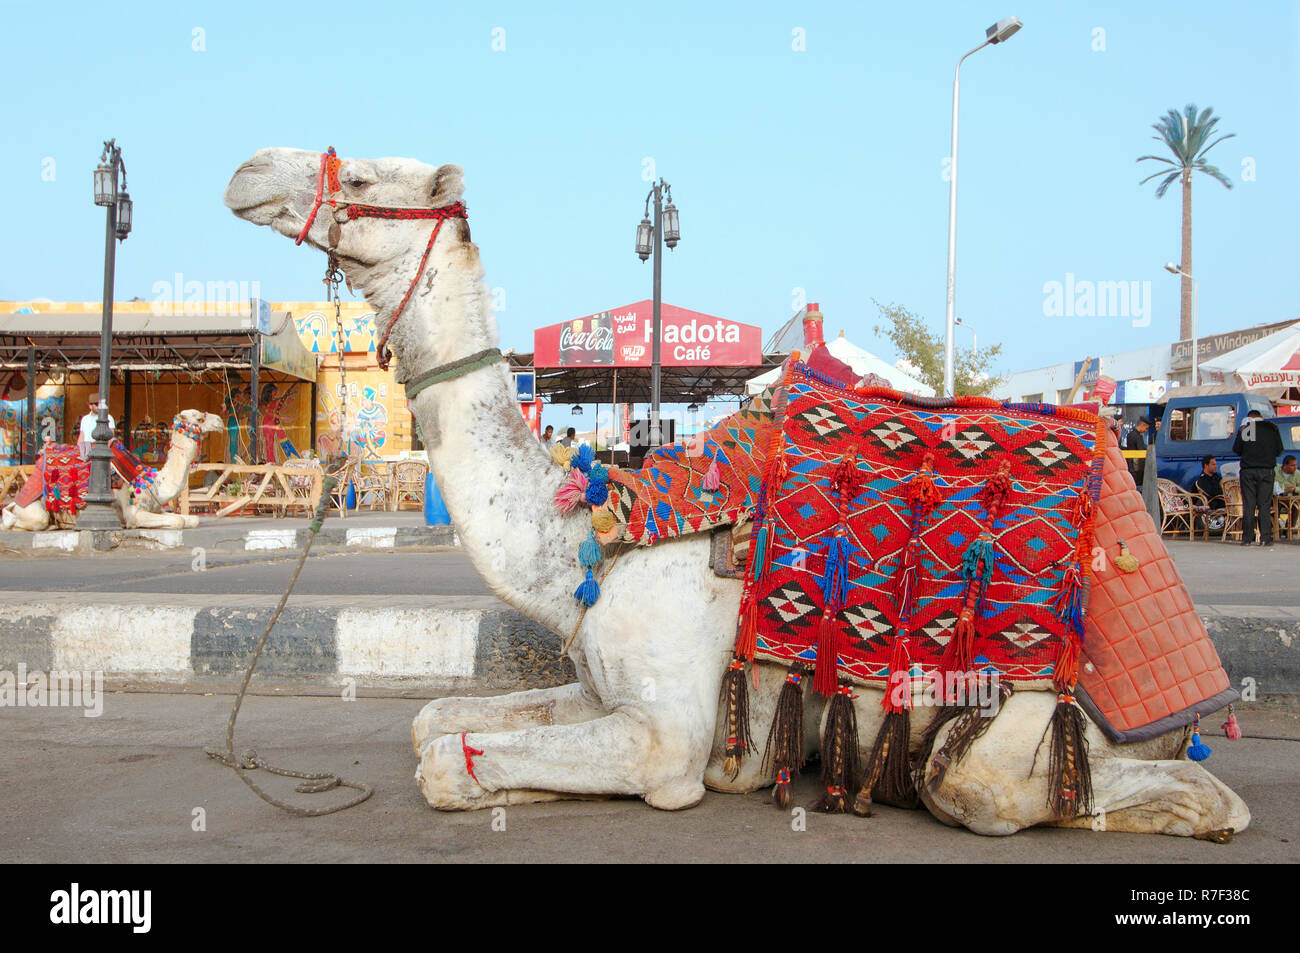 Le dromadaire ou chameau d'Arabie (Camelus dromedarius) assis dans la rue, du Vieux Marché, Charm el-Cheikh, Egypte Banque D'Images